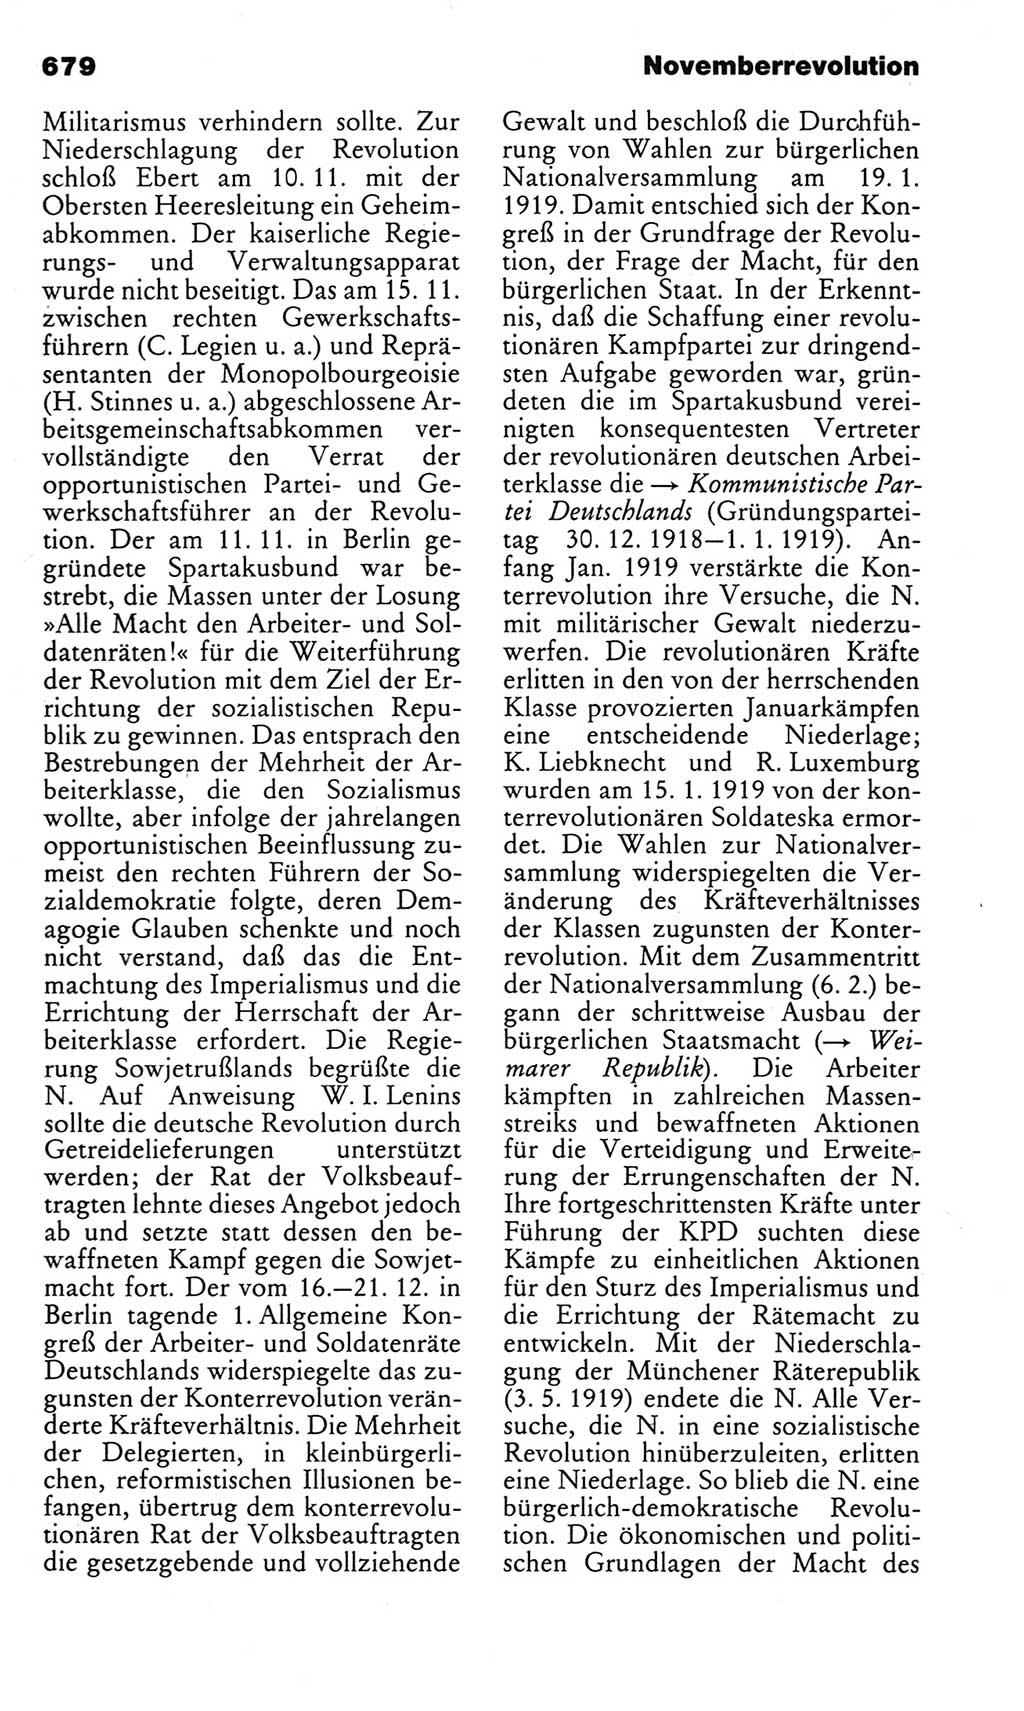 Kleines politisches Wörterbuch [Deutsche Demokratische Republik (DDR)] 1983, Seite 679 (Kl. pol. Wb. DDR 1983, S. 679)